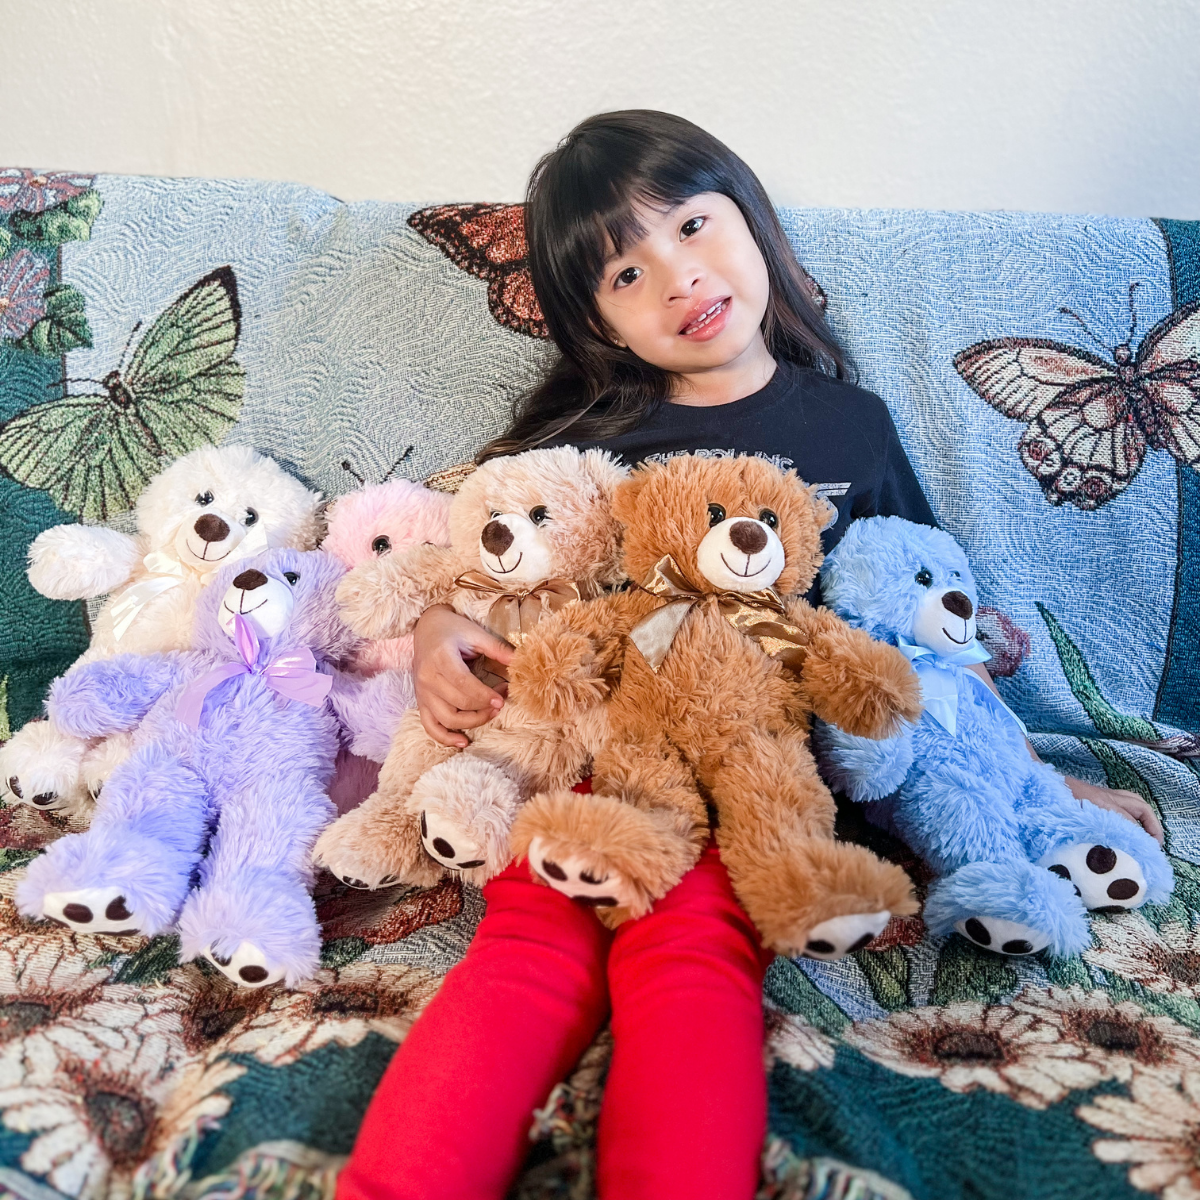 7-teiliges Teddybär-Stoffspielzeug, sieben Farben, 13,8 Zoll